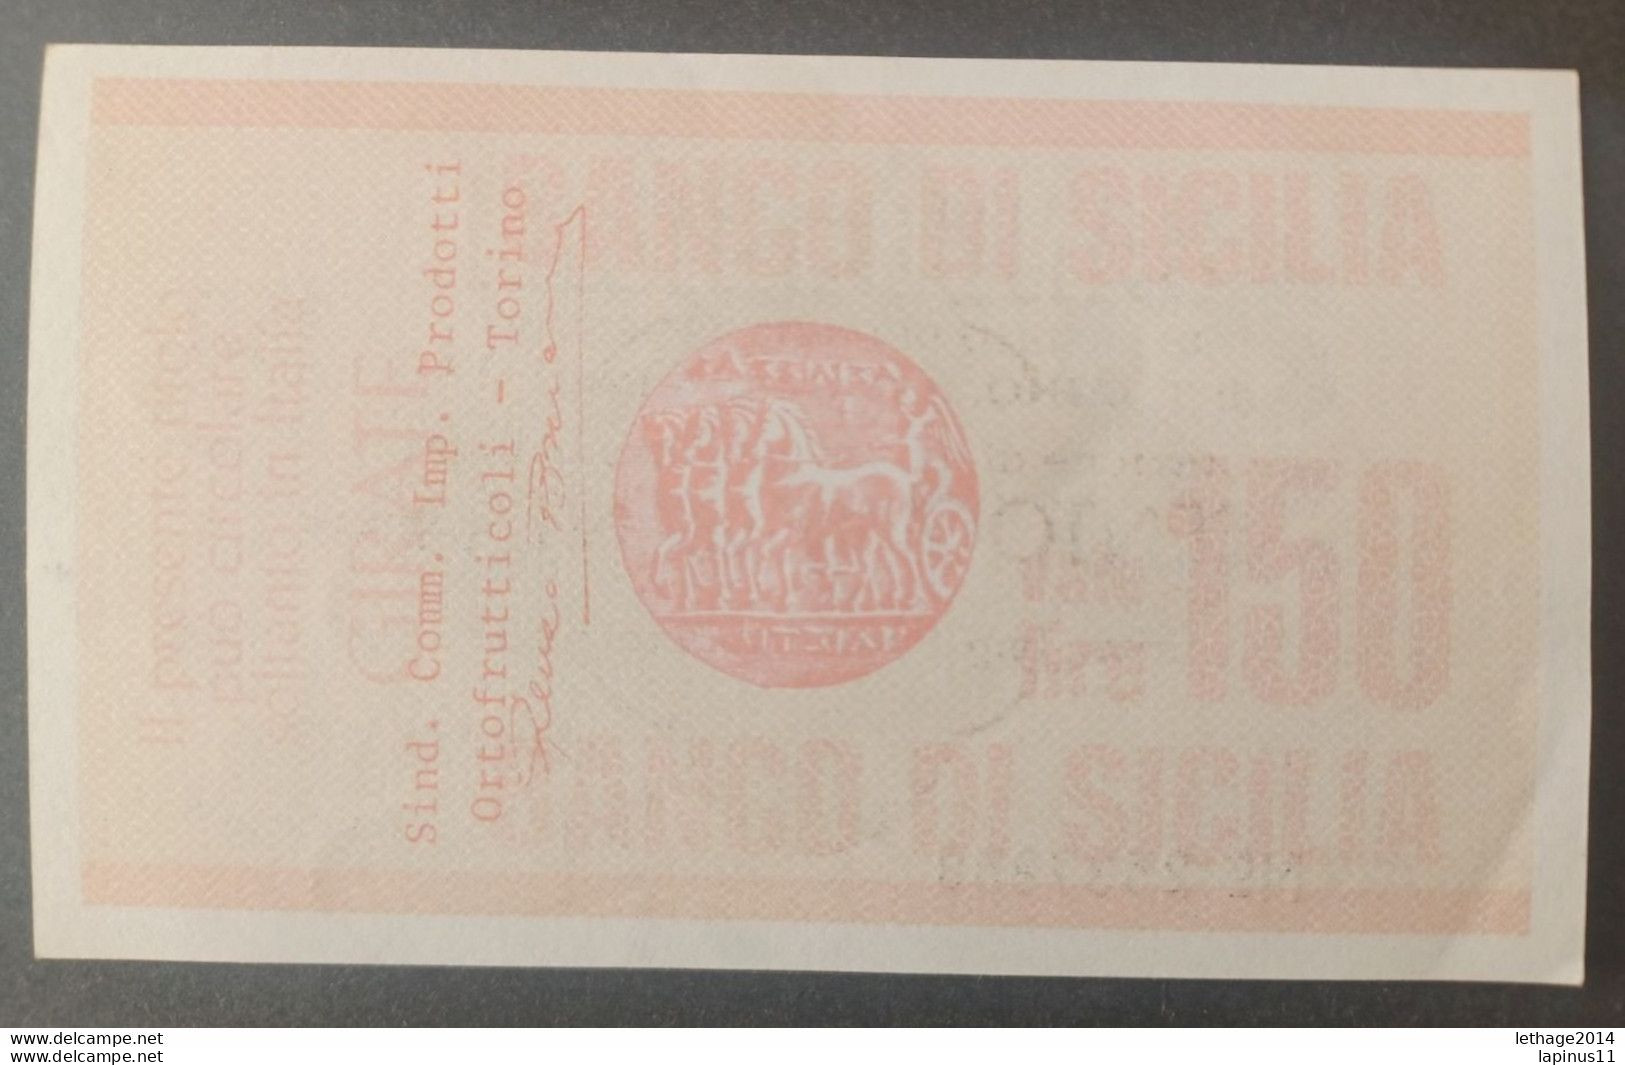 BANKNOTE ITALY MINICHECKS 150 LIRE BANCO DI SICILIA 1977 FDS - [10] Cheques En Mini-cheques